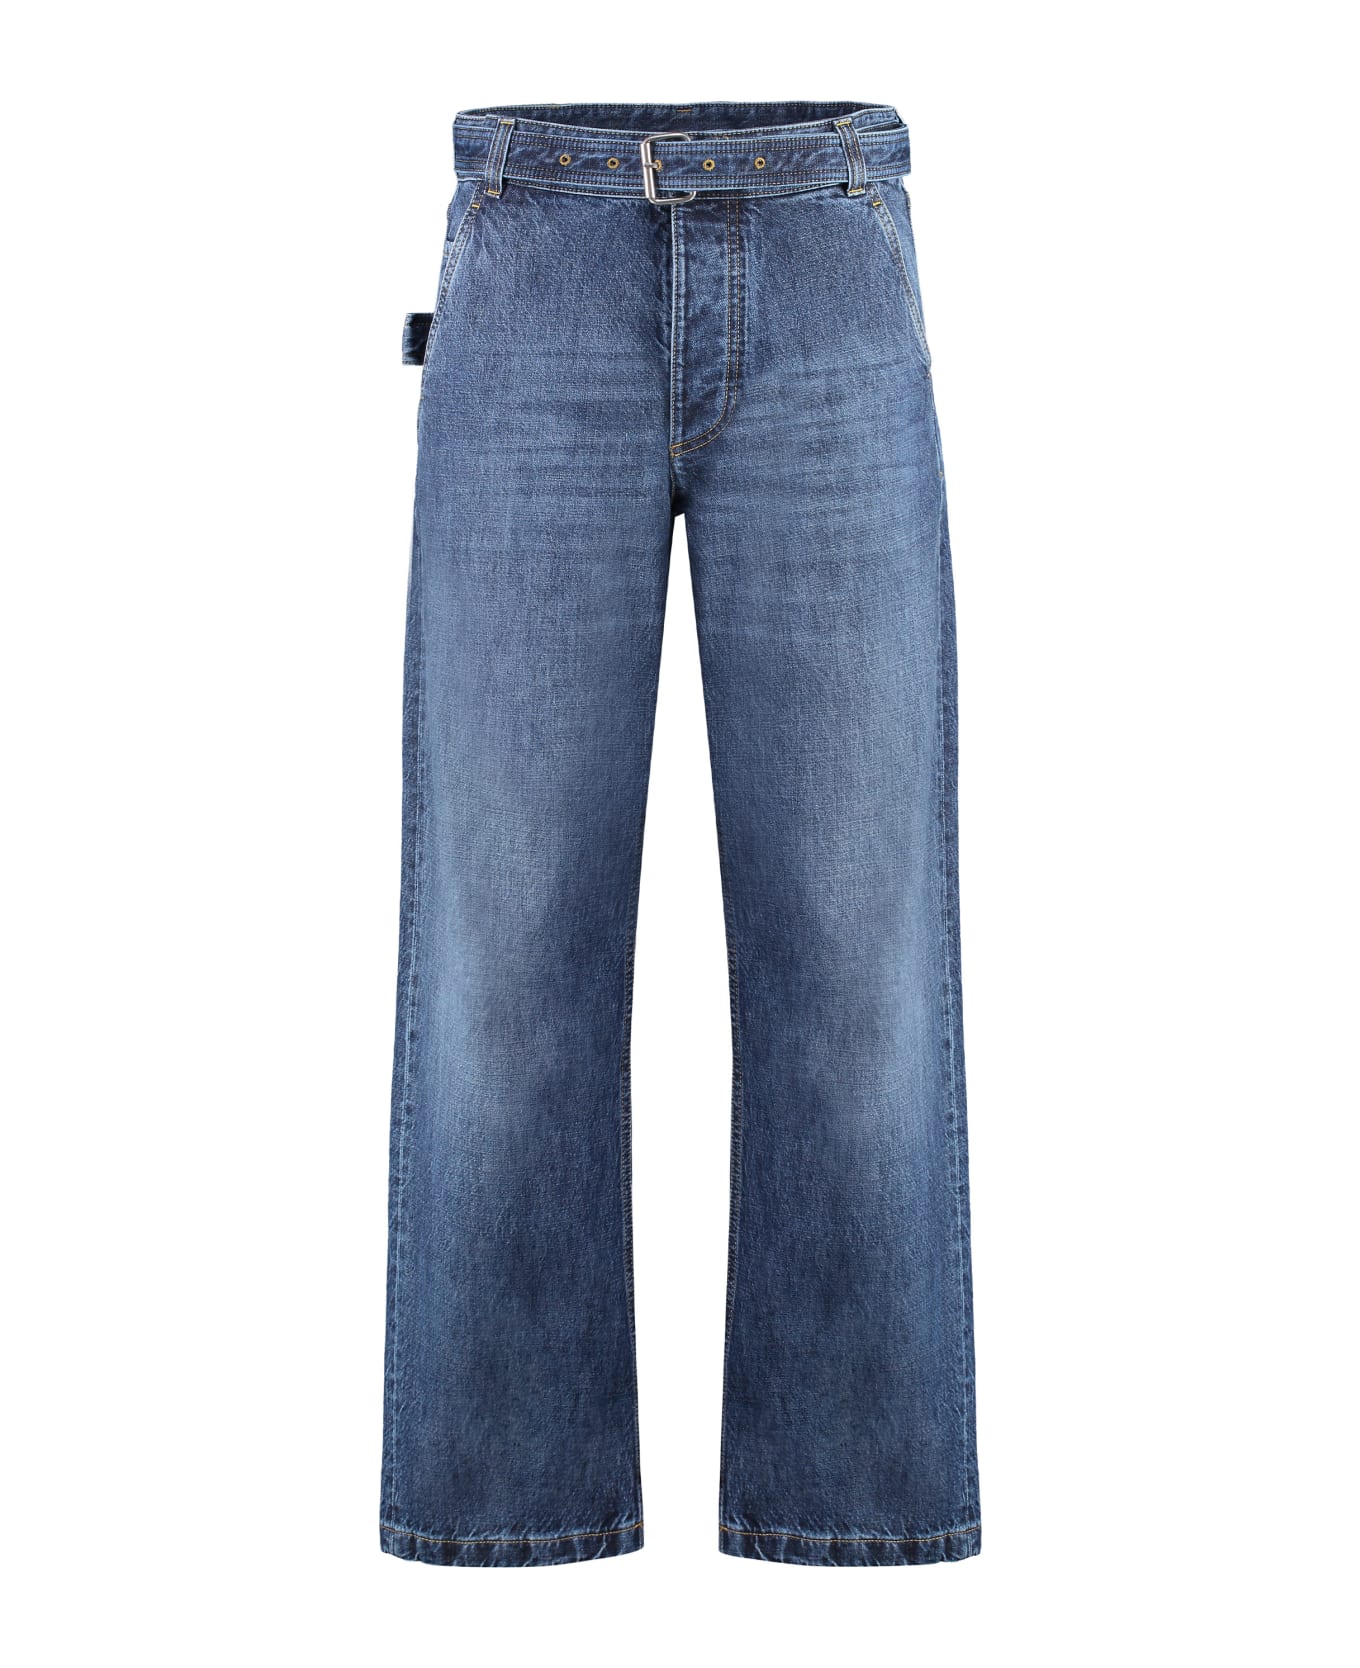 Bottega Veneta Wide Leg Jeans - Denim